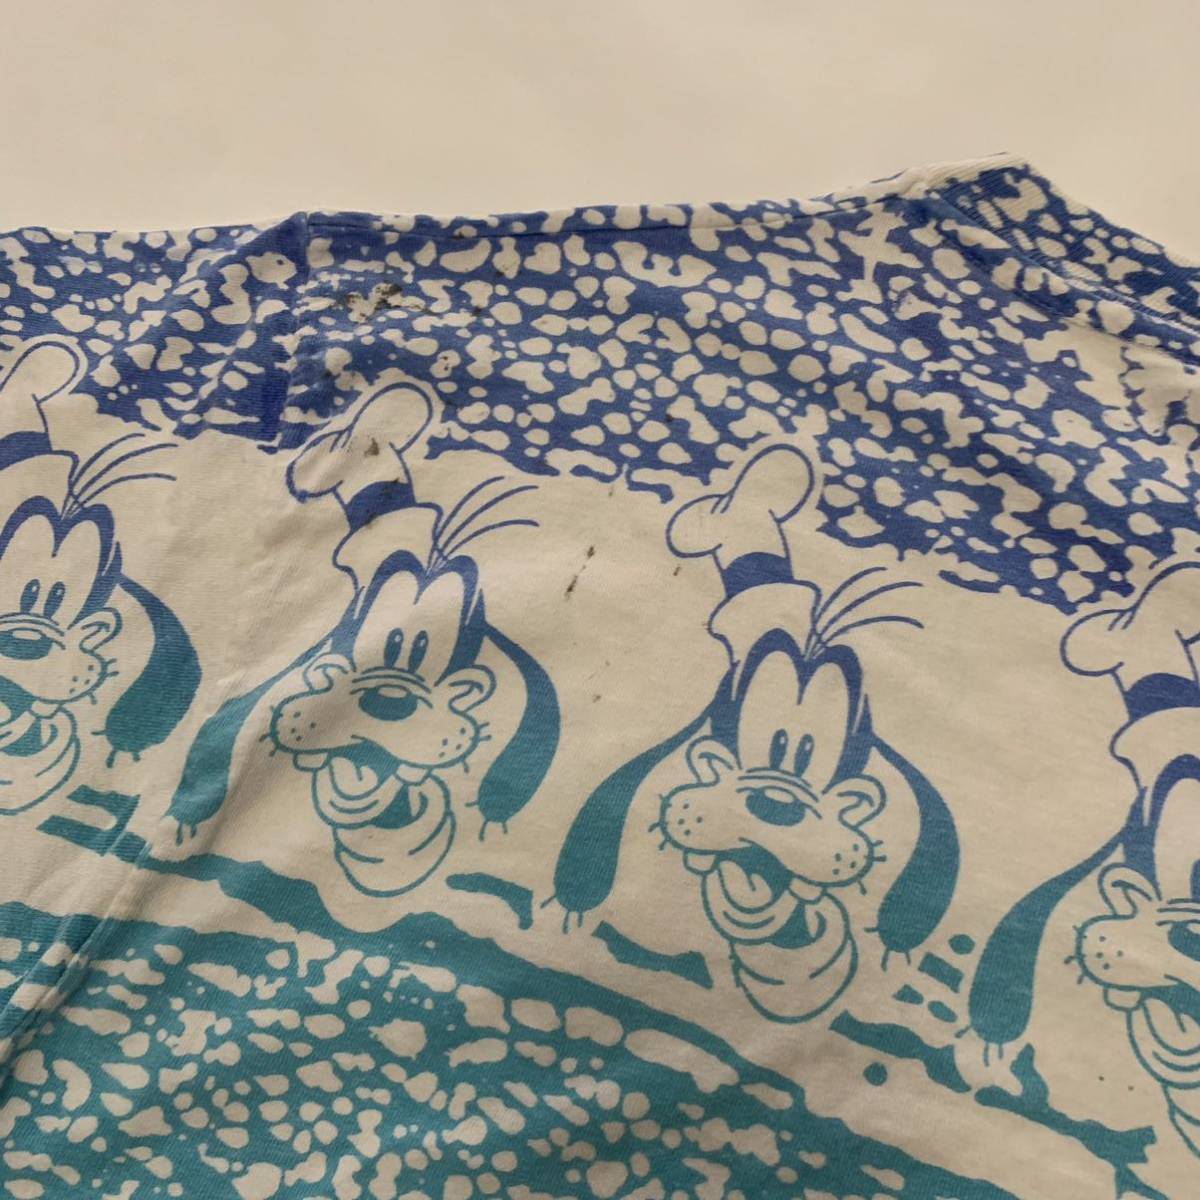 レア 90s Disney 総柄 コミック Tシャツ 企業 ミッキー ミニー USA製